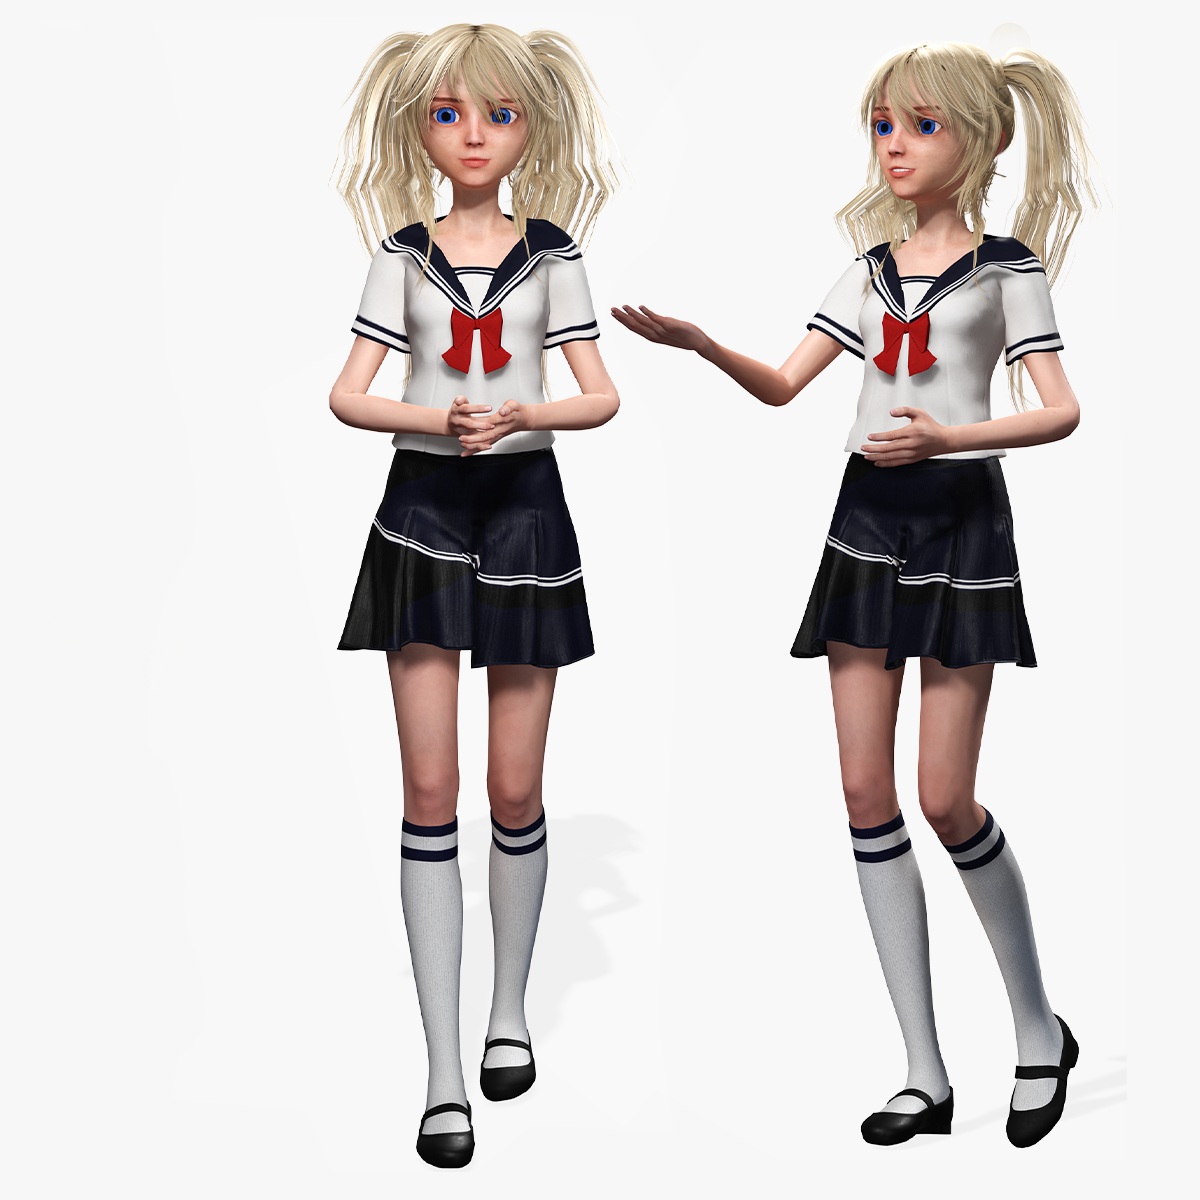 Blender 3.0 - Anime School Girl modeling 